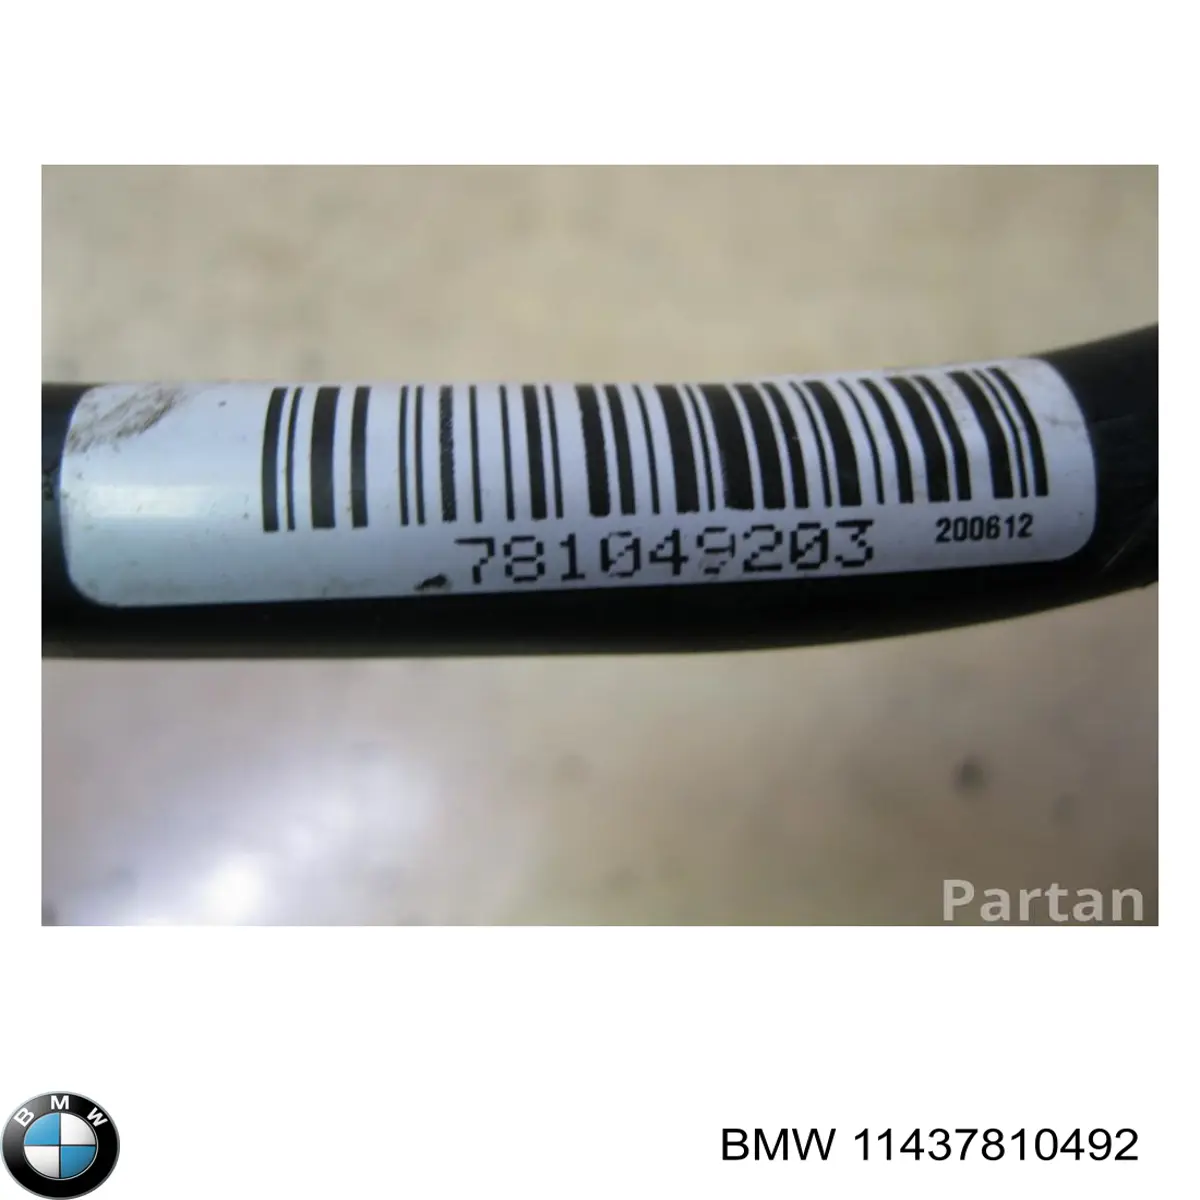 11437810493 BMW embudo, varilla del aceite, motor